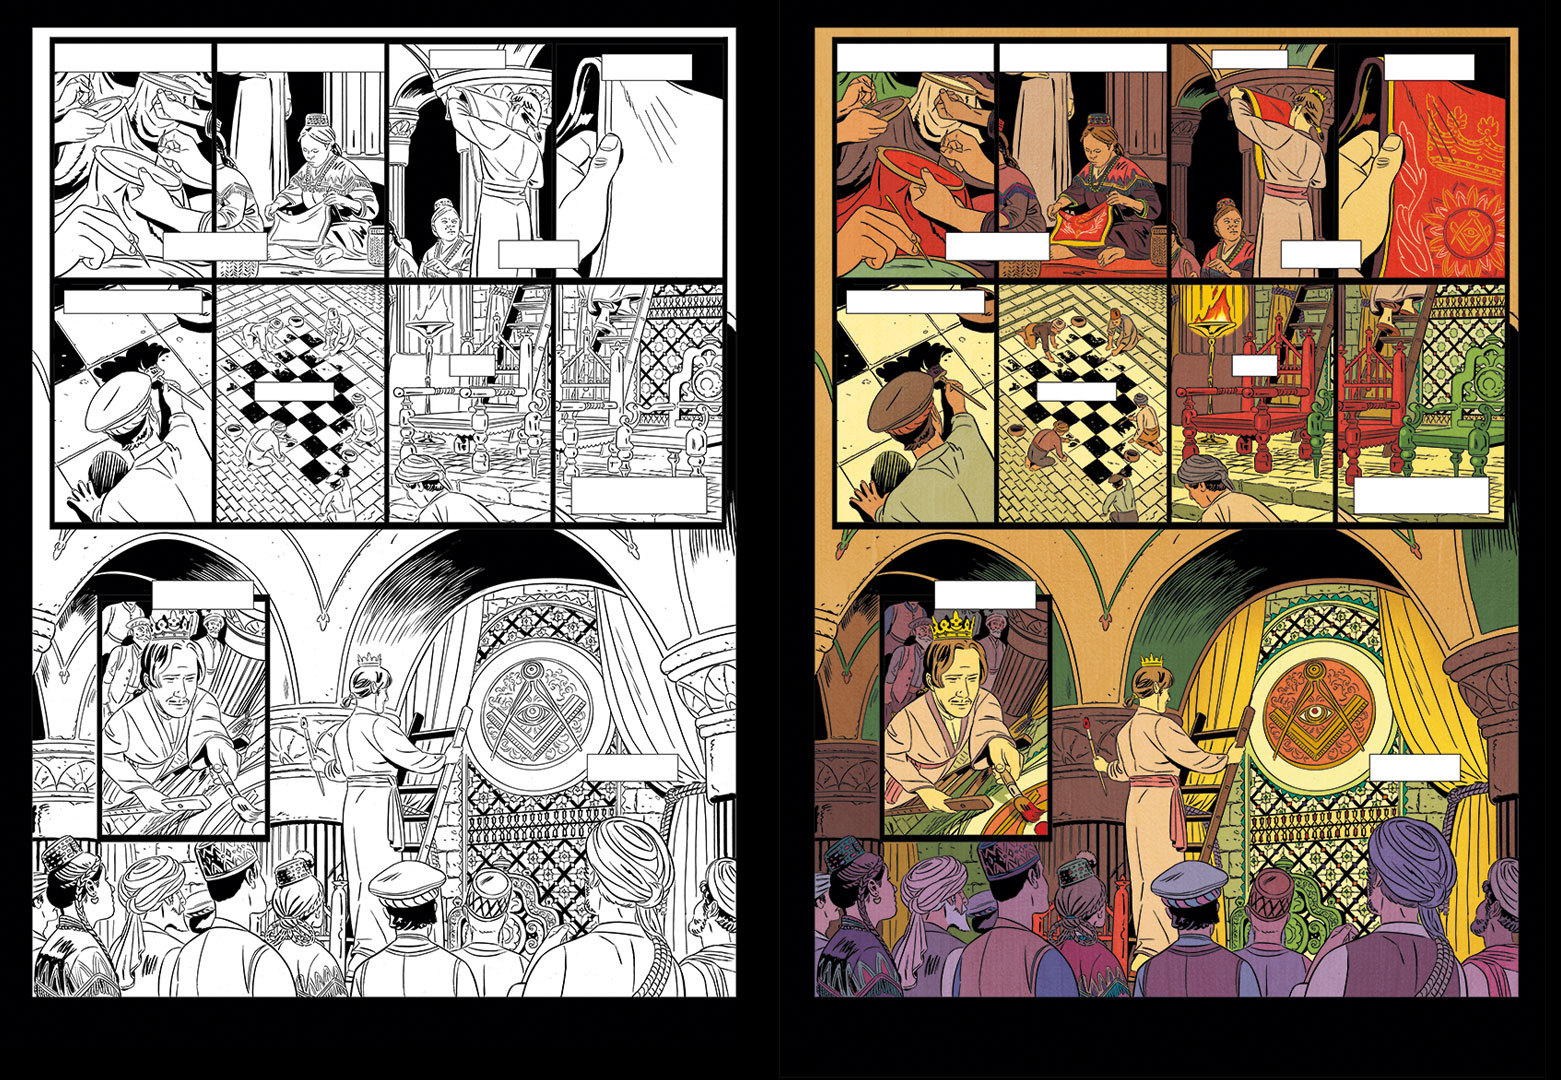 planche en couleurs extraite de L'homme qui voulut être roi, album édité chez Glénat, dessiné et scénarisé par Torregrossa d'après la nouvelle de Kipling